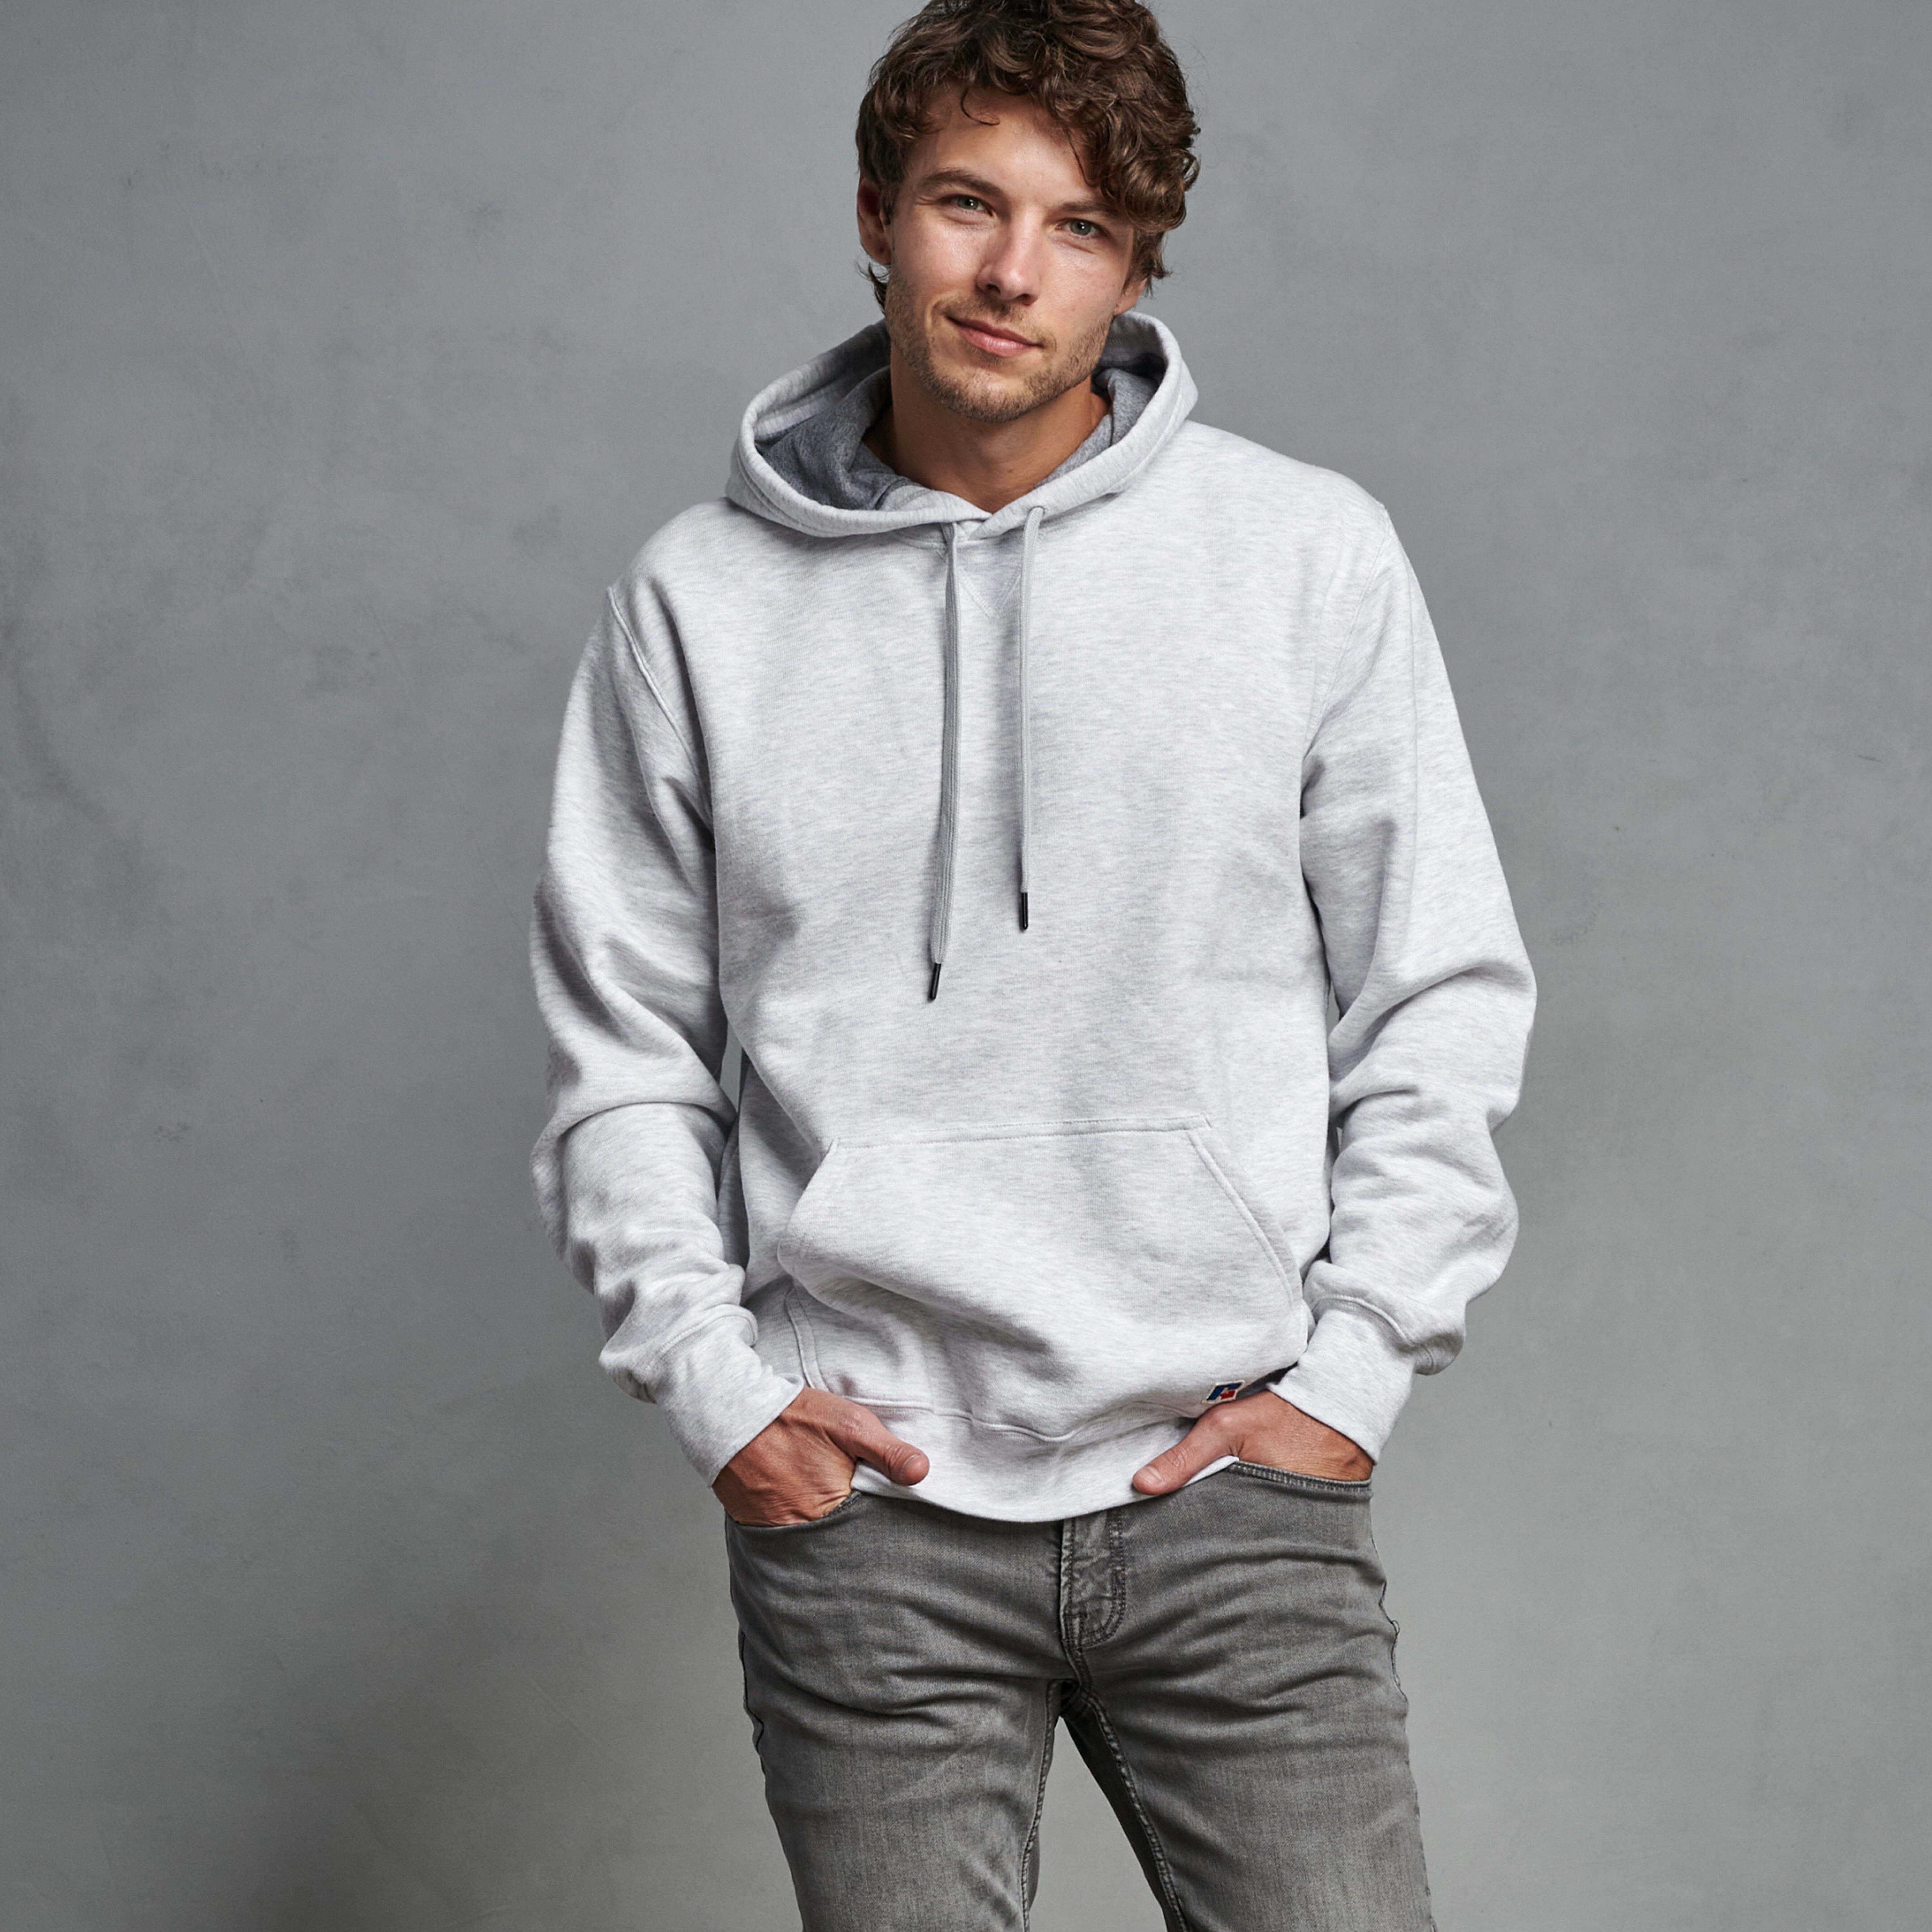 premium fleece hoodie